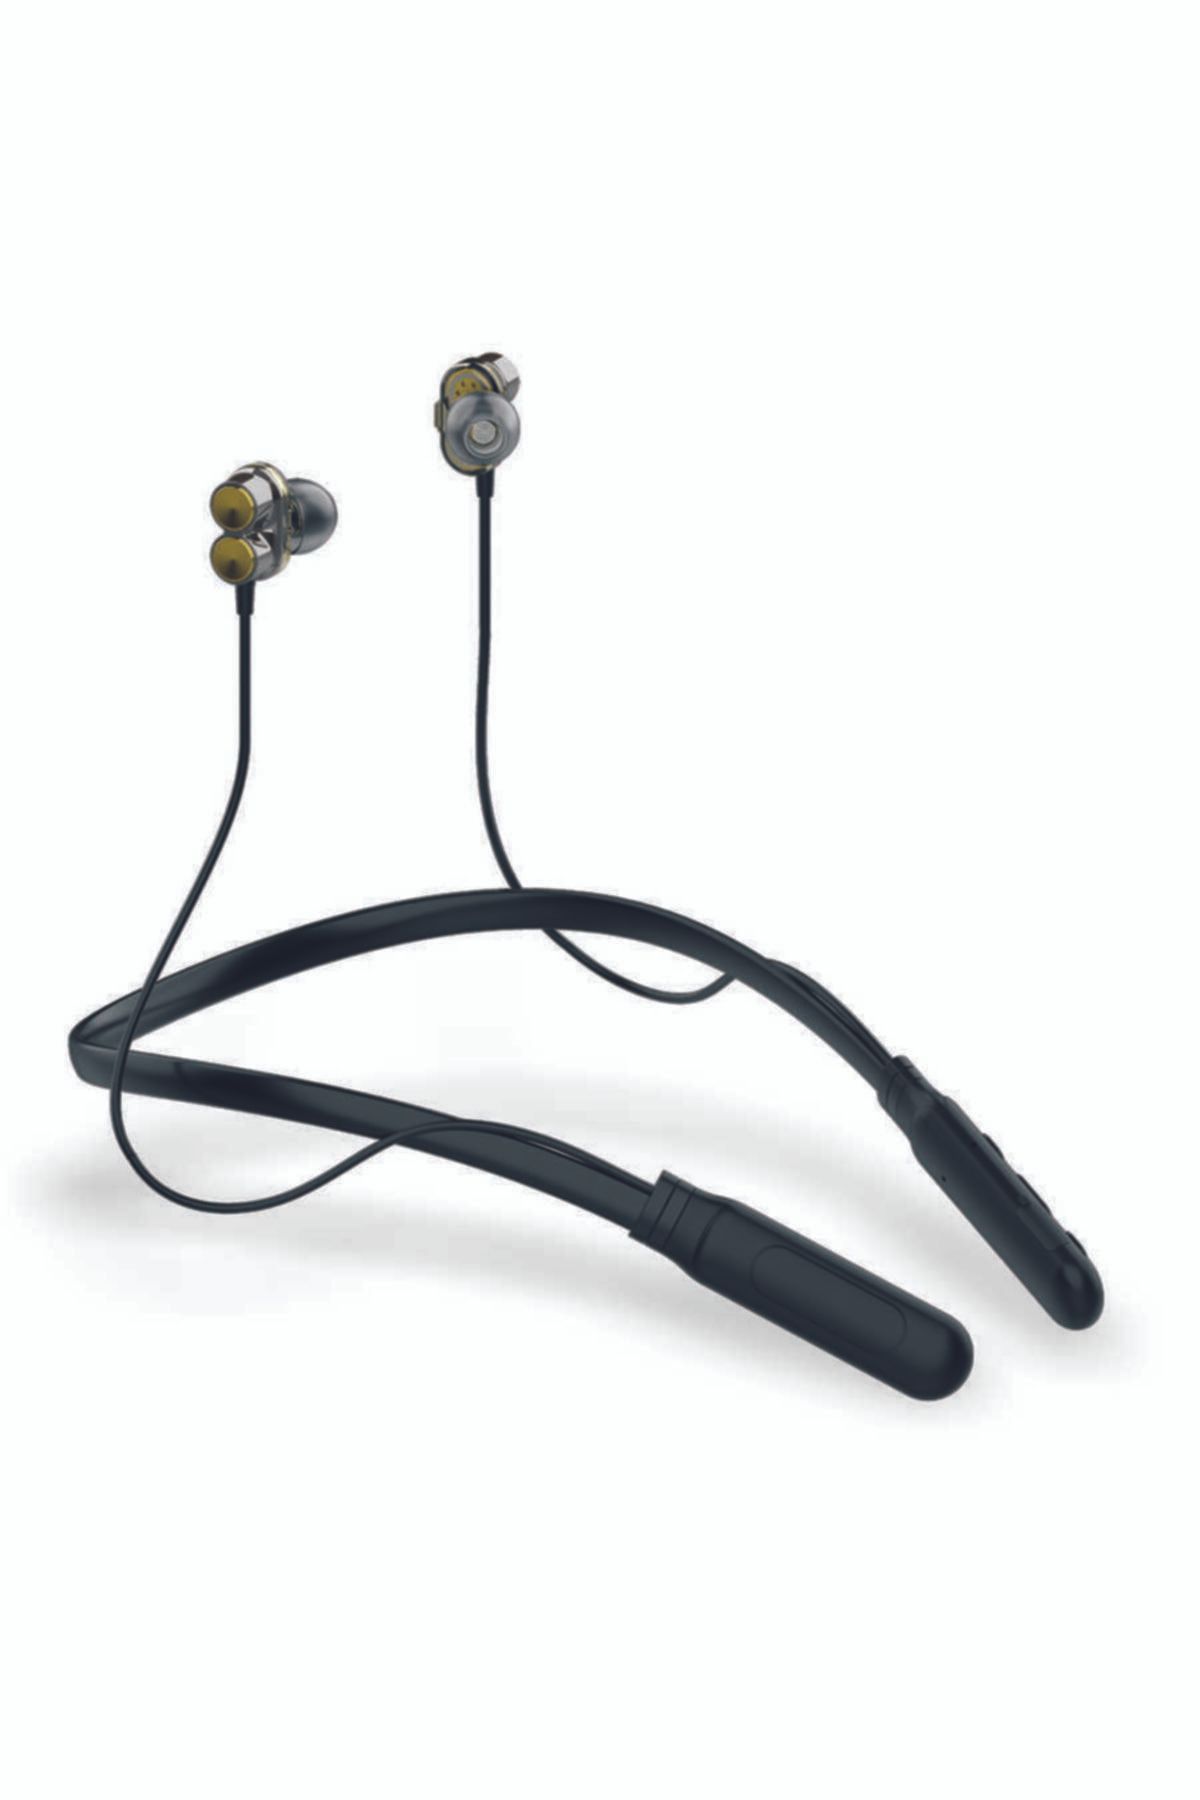 Genel Markalar Bluetooth Kulaklık Zore Zr-bh21 Kablolu Kulak Içi Kulaklık Bulutut